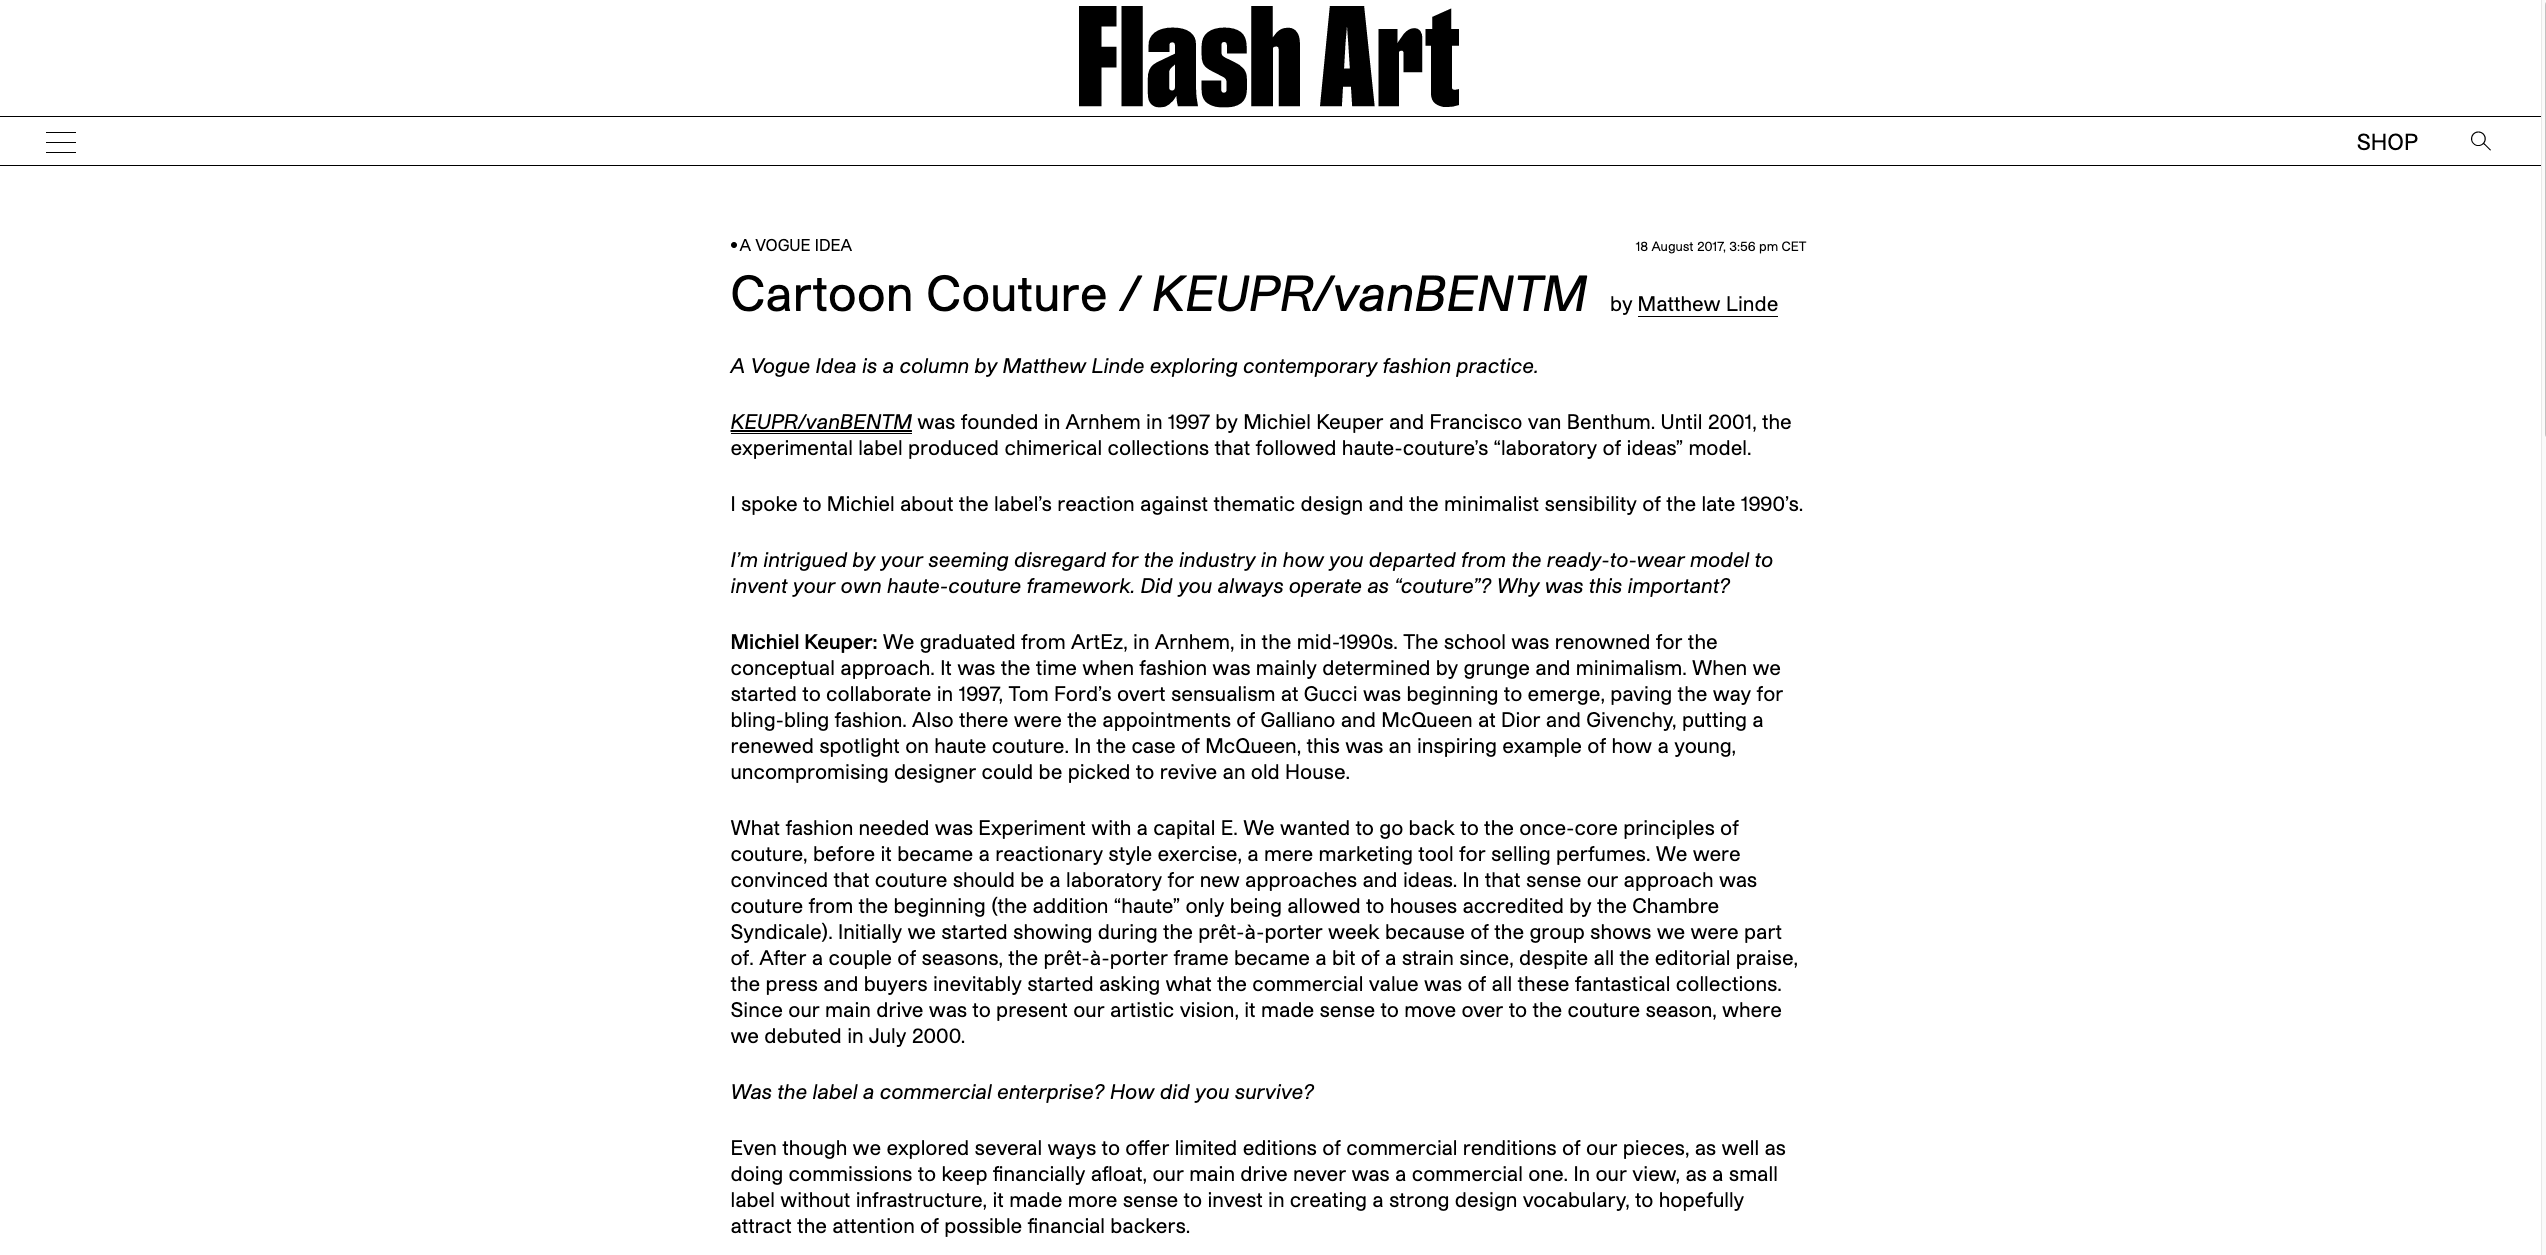 Cartoon Couture / KEUPR/vanBENTM 